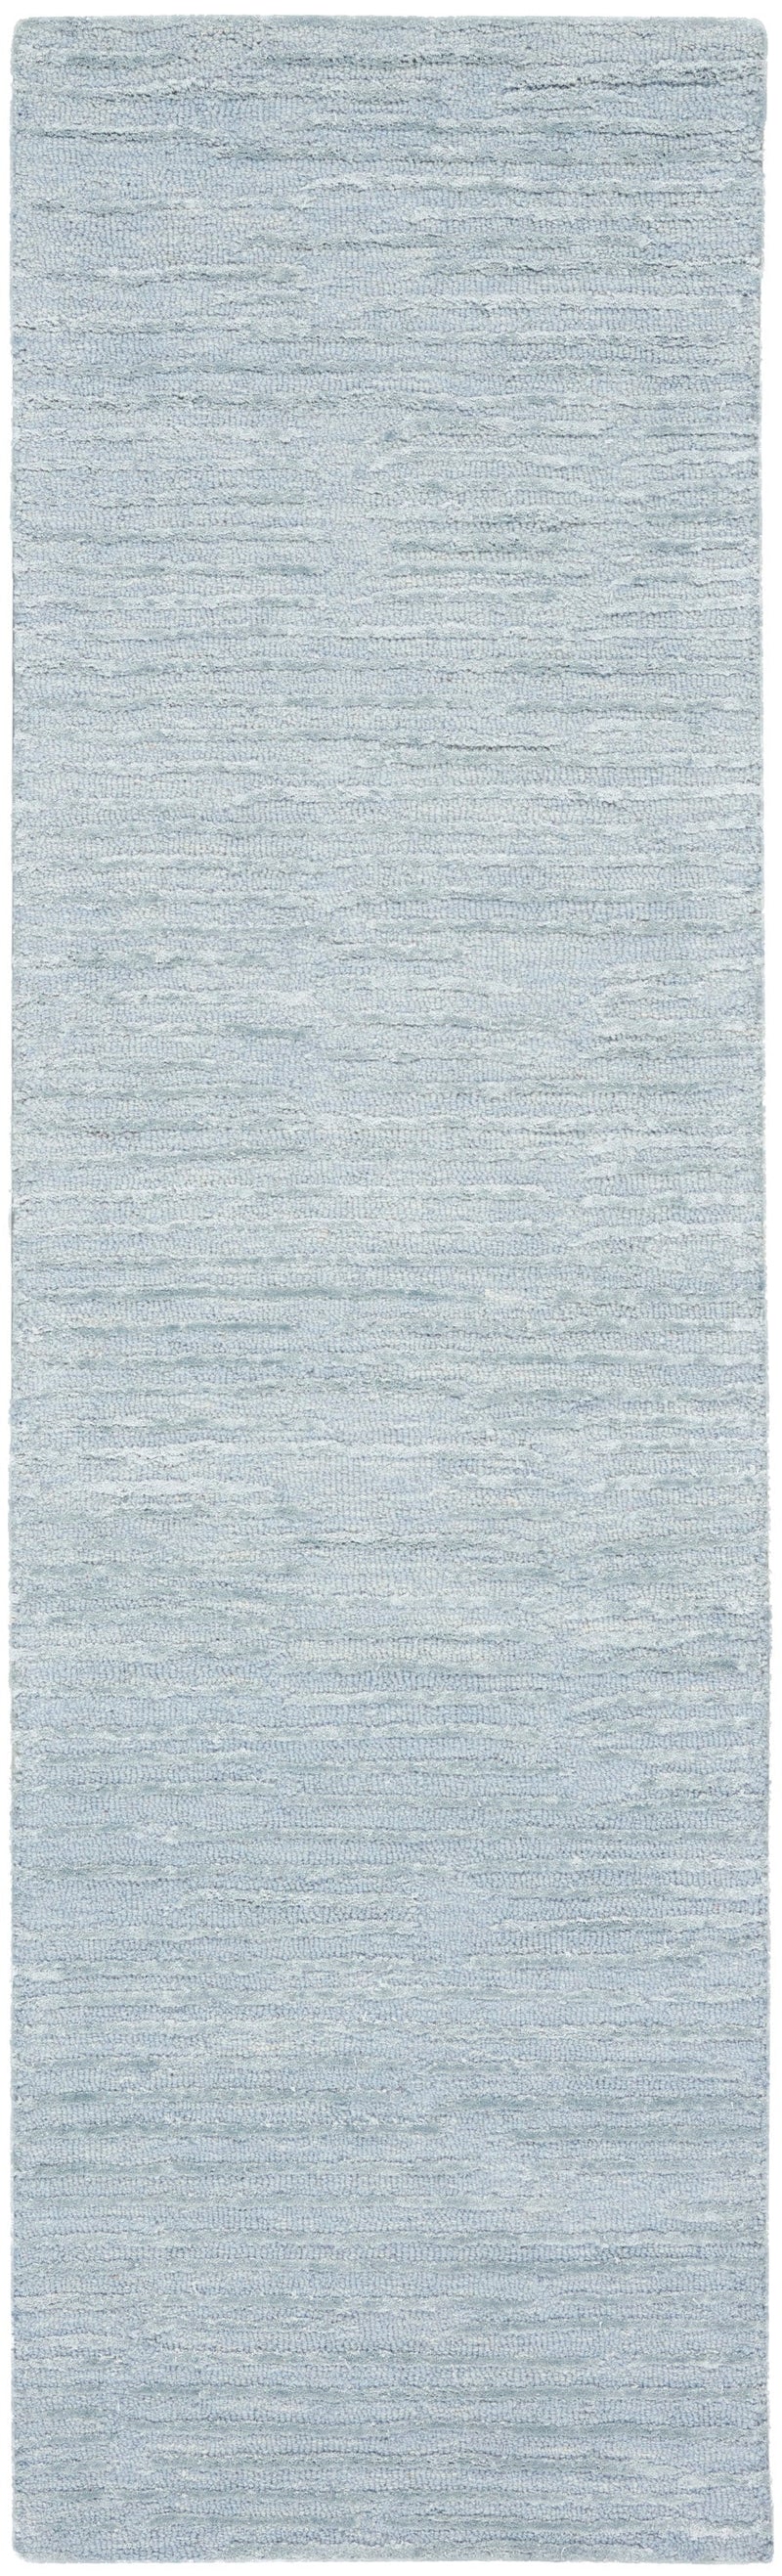 media image for ck010 linear handmade light blue rug by nourison 99446879950 redo 2 222